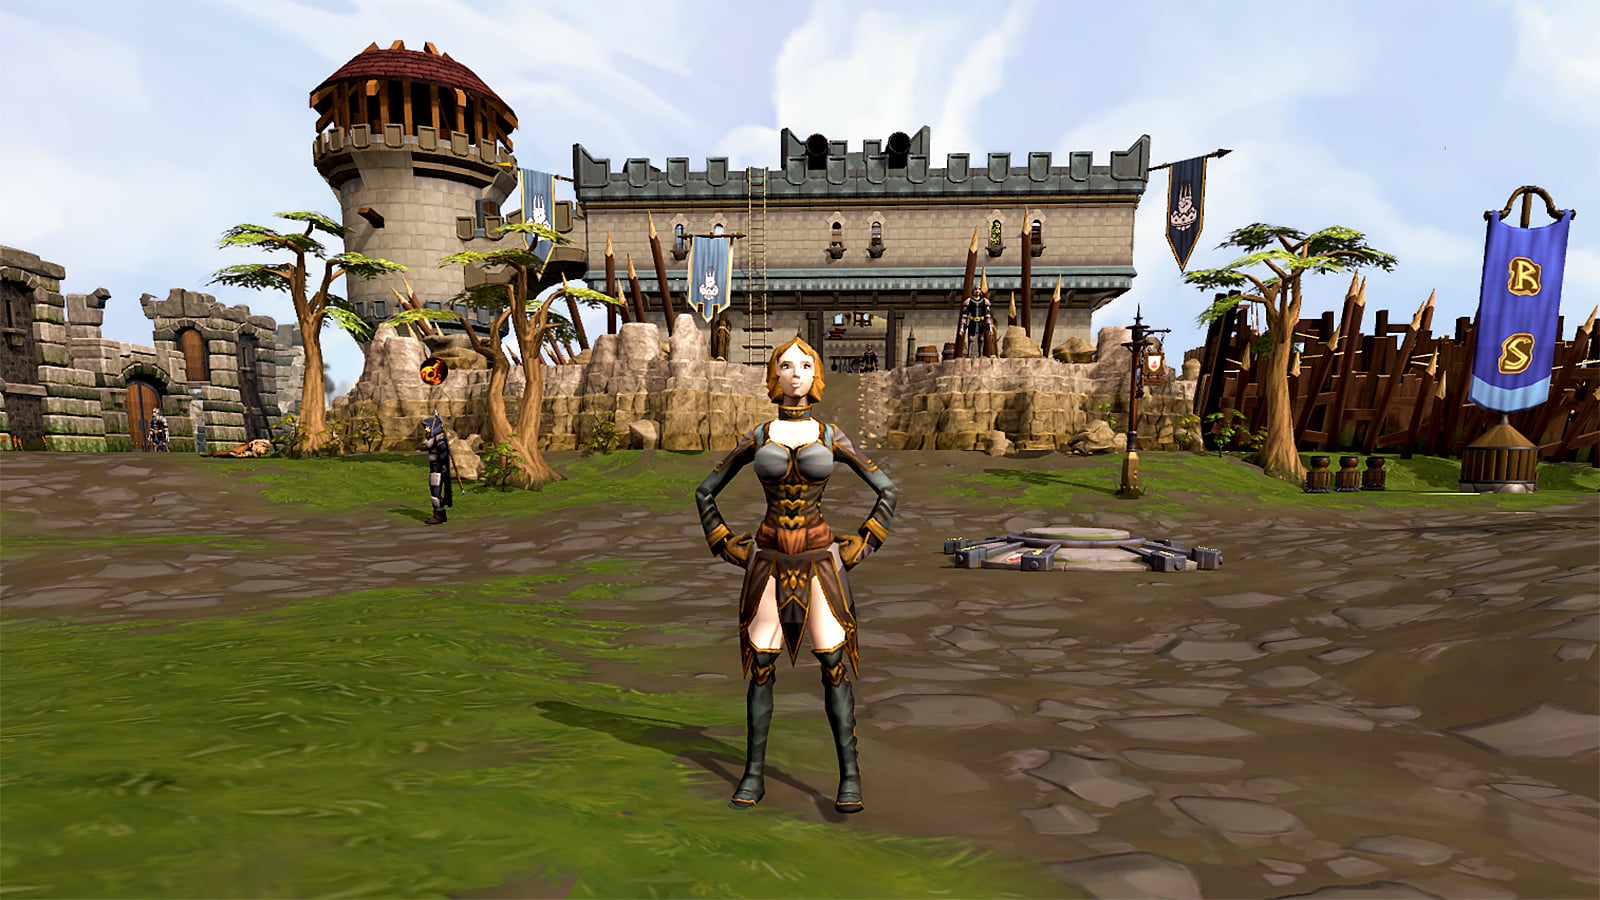 Играч-характерен, позиращ от забележителност на замъка в безплатния MMORPG, Runescape